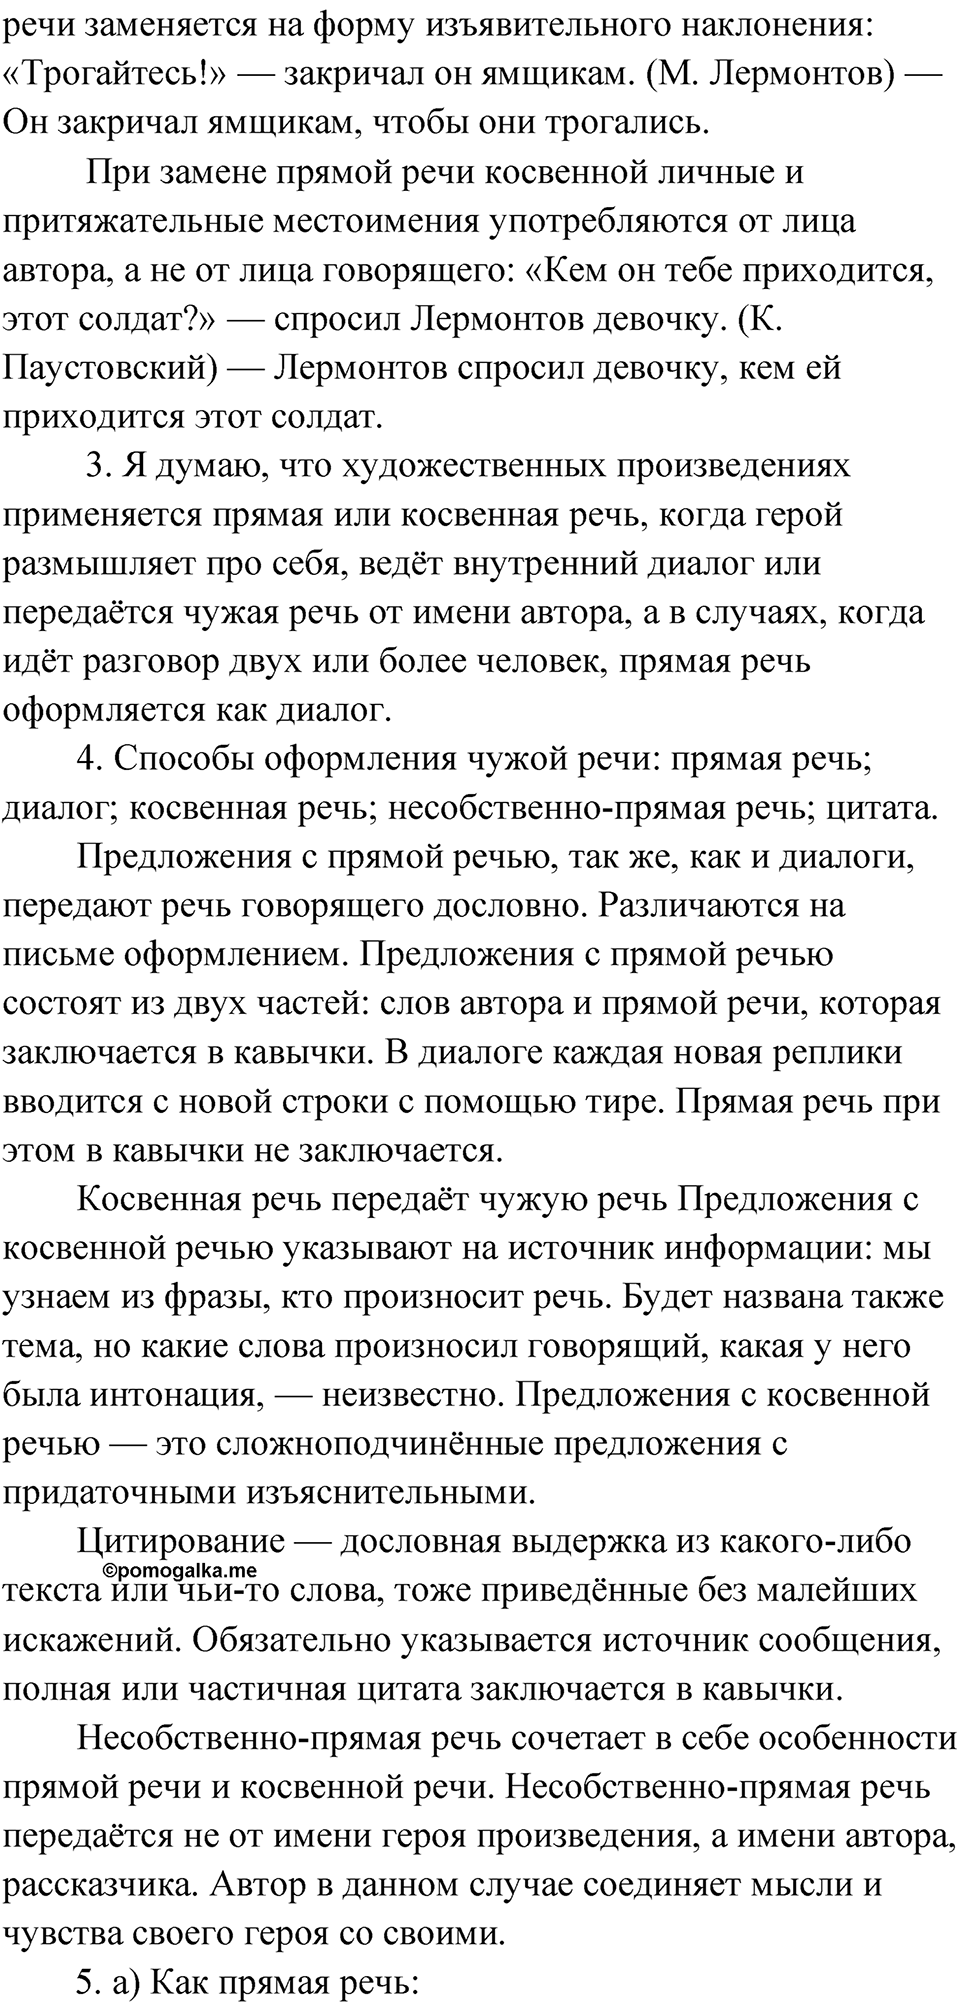 страница 79 Проверяем себя русский язык 9 класс Быстрова 2 часть 2022 год